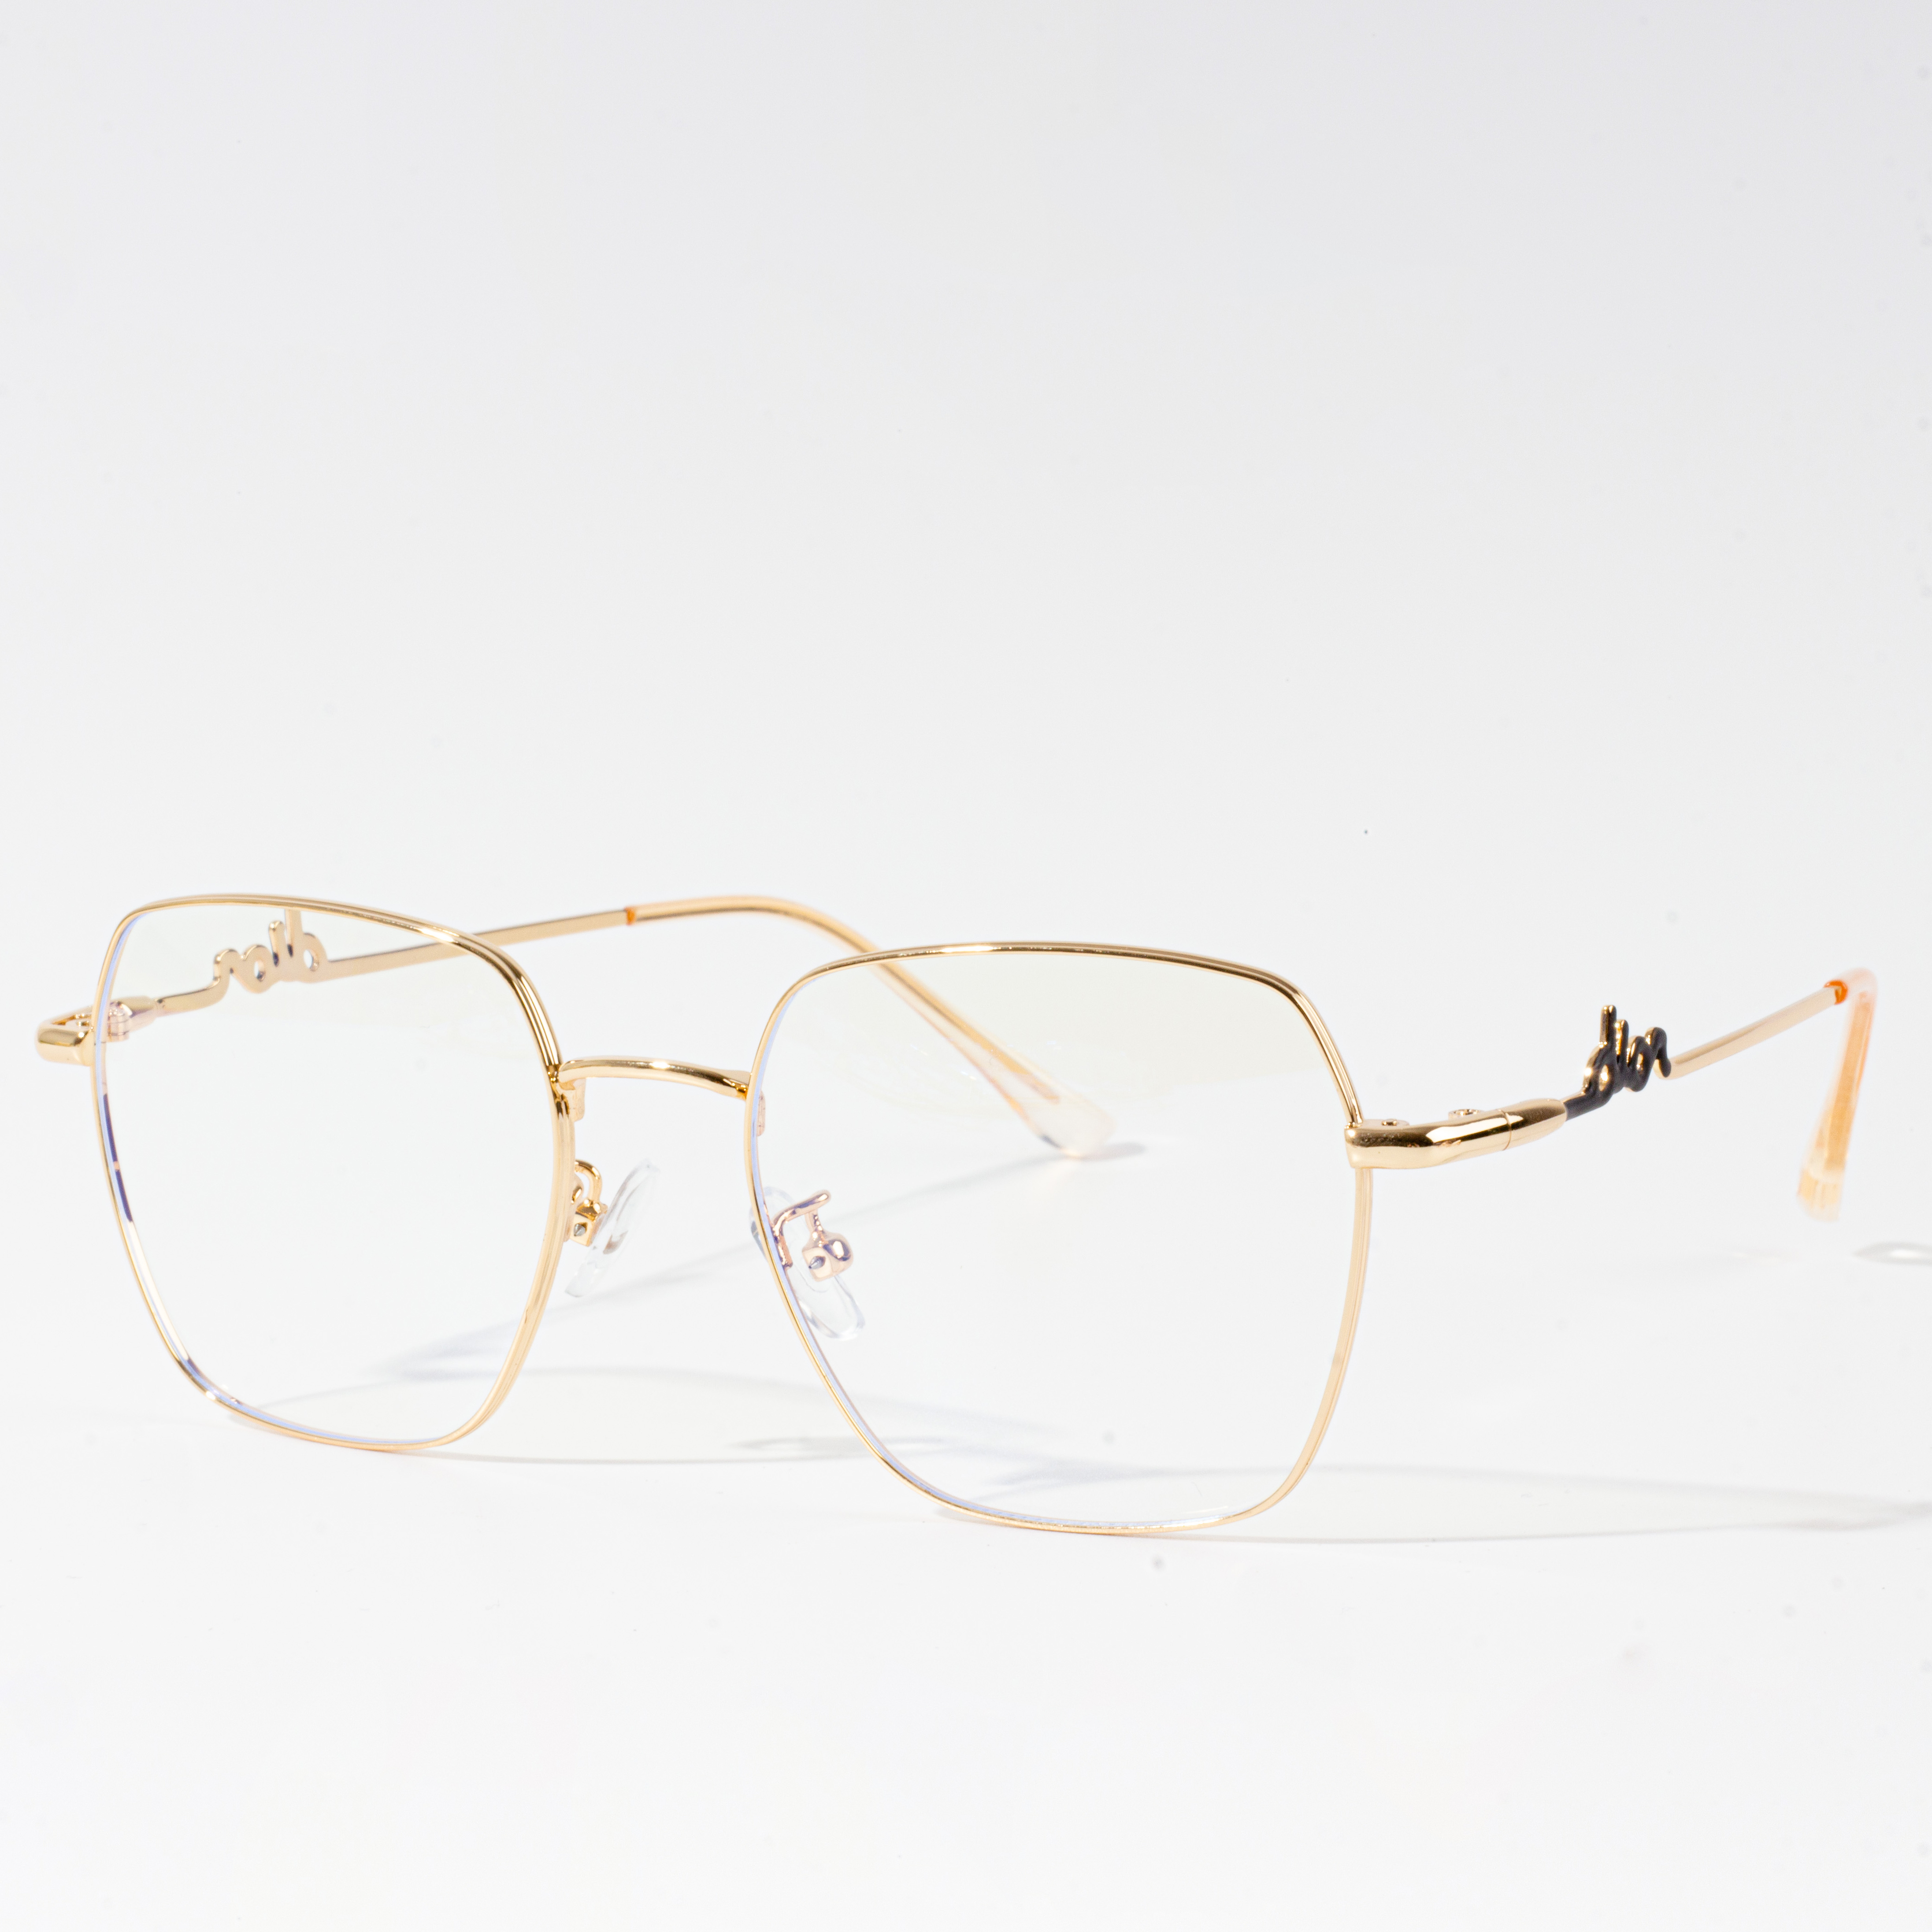 výběr brýlových obrub